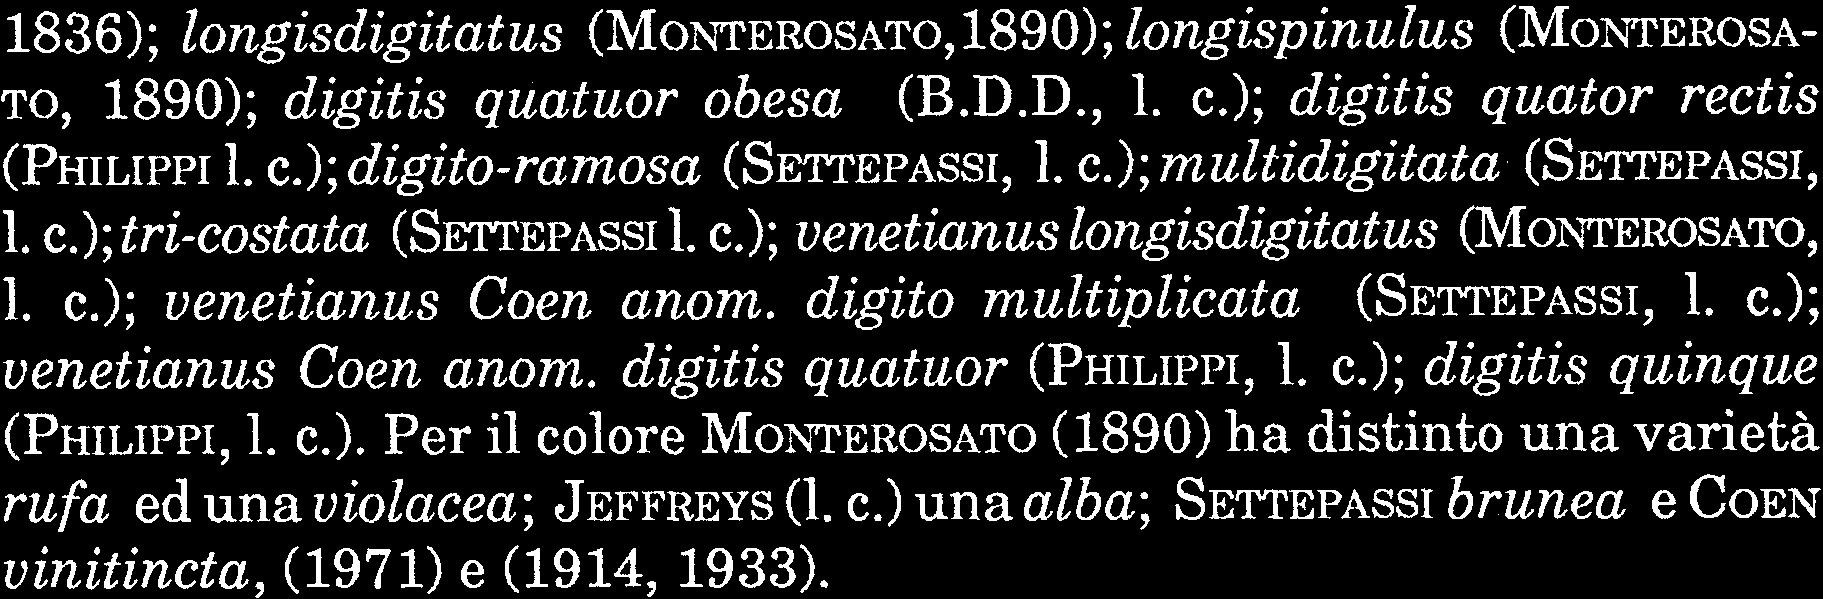 86); longisd igitat us ( MONTEROSATO, 890); longisp inulus (MOP~TEROSA TO, 890); digitis quatuor obesa (B.D.D.,. c.); digitis quator rectis (PHILIPPI. c.); digito-ramosa (SETTEPASSI,. c.); multidigitata (SETTEPASSI,.